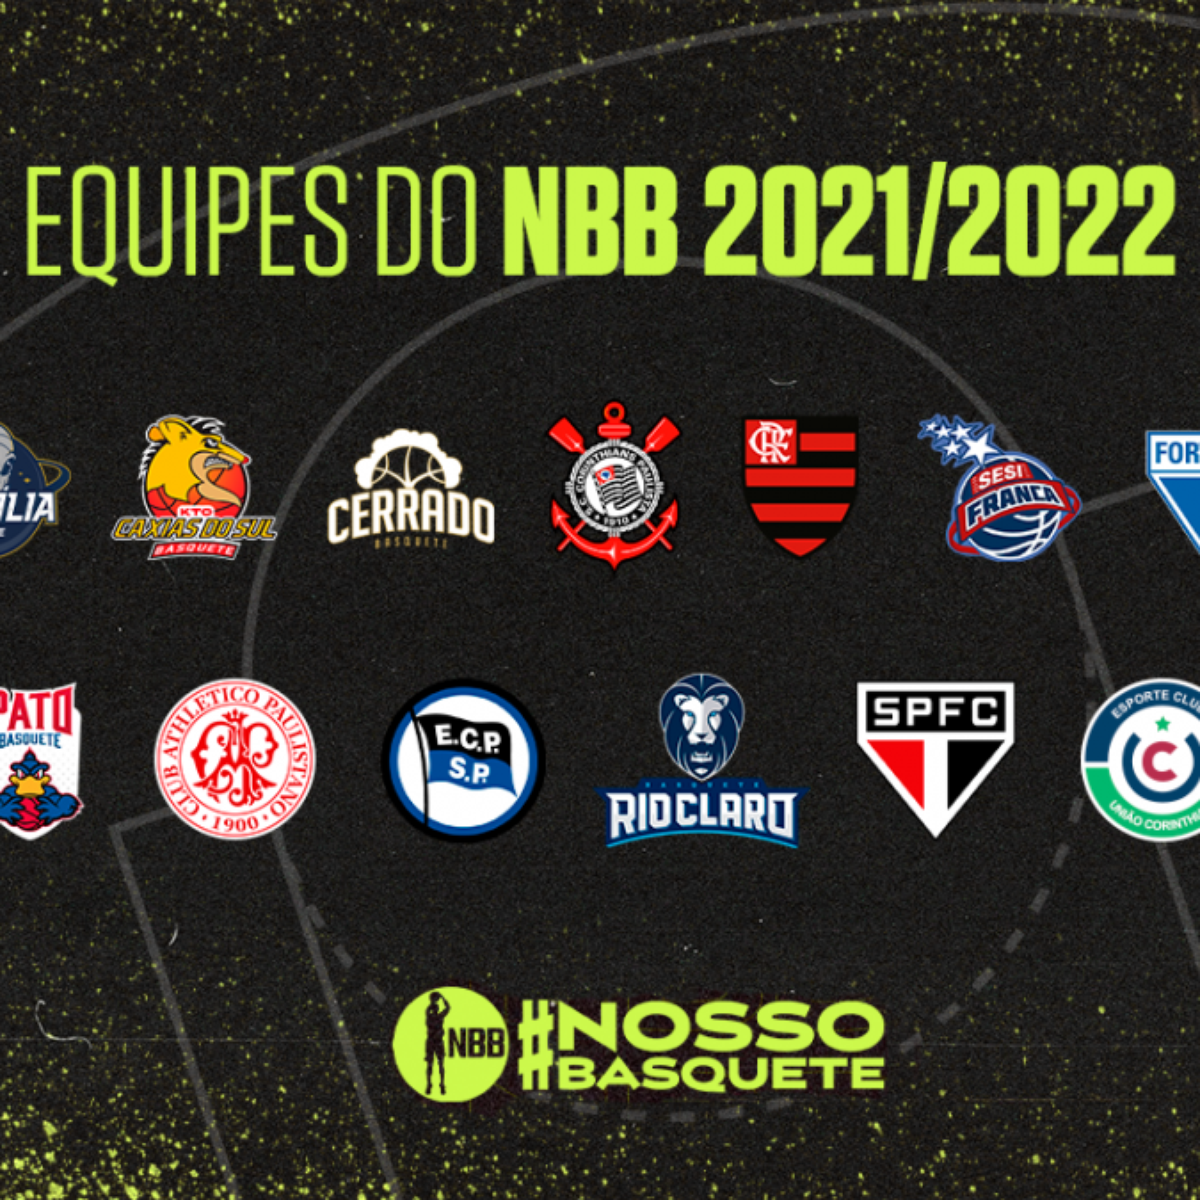 Corinthians Basquete recebe Bauru em último jogo em casa no NBB 2021/2022